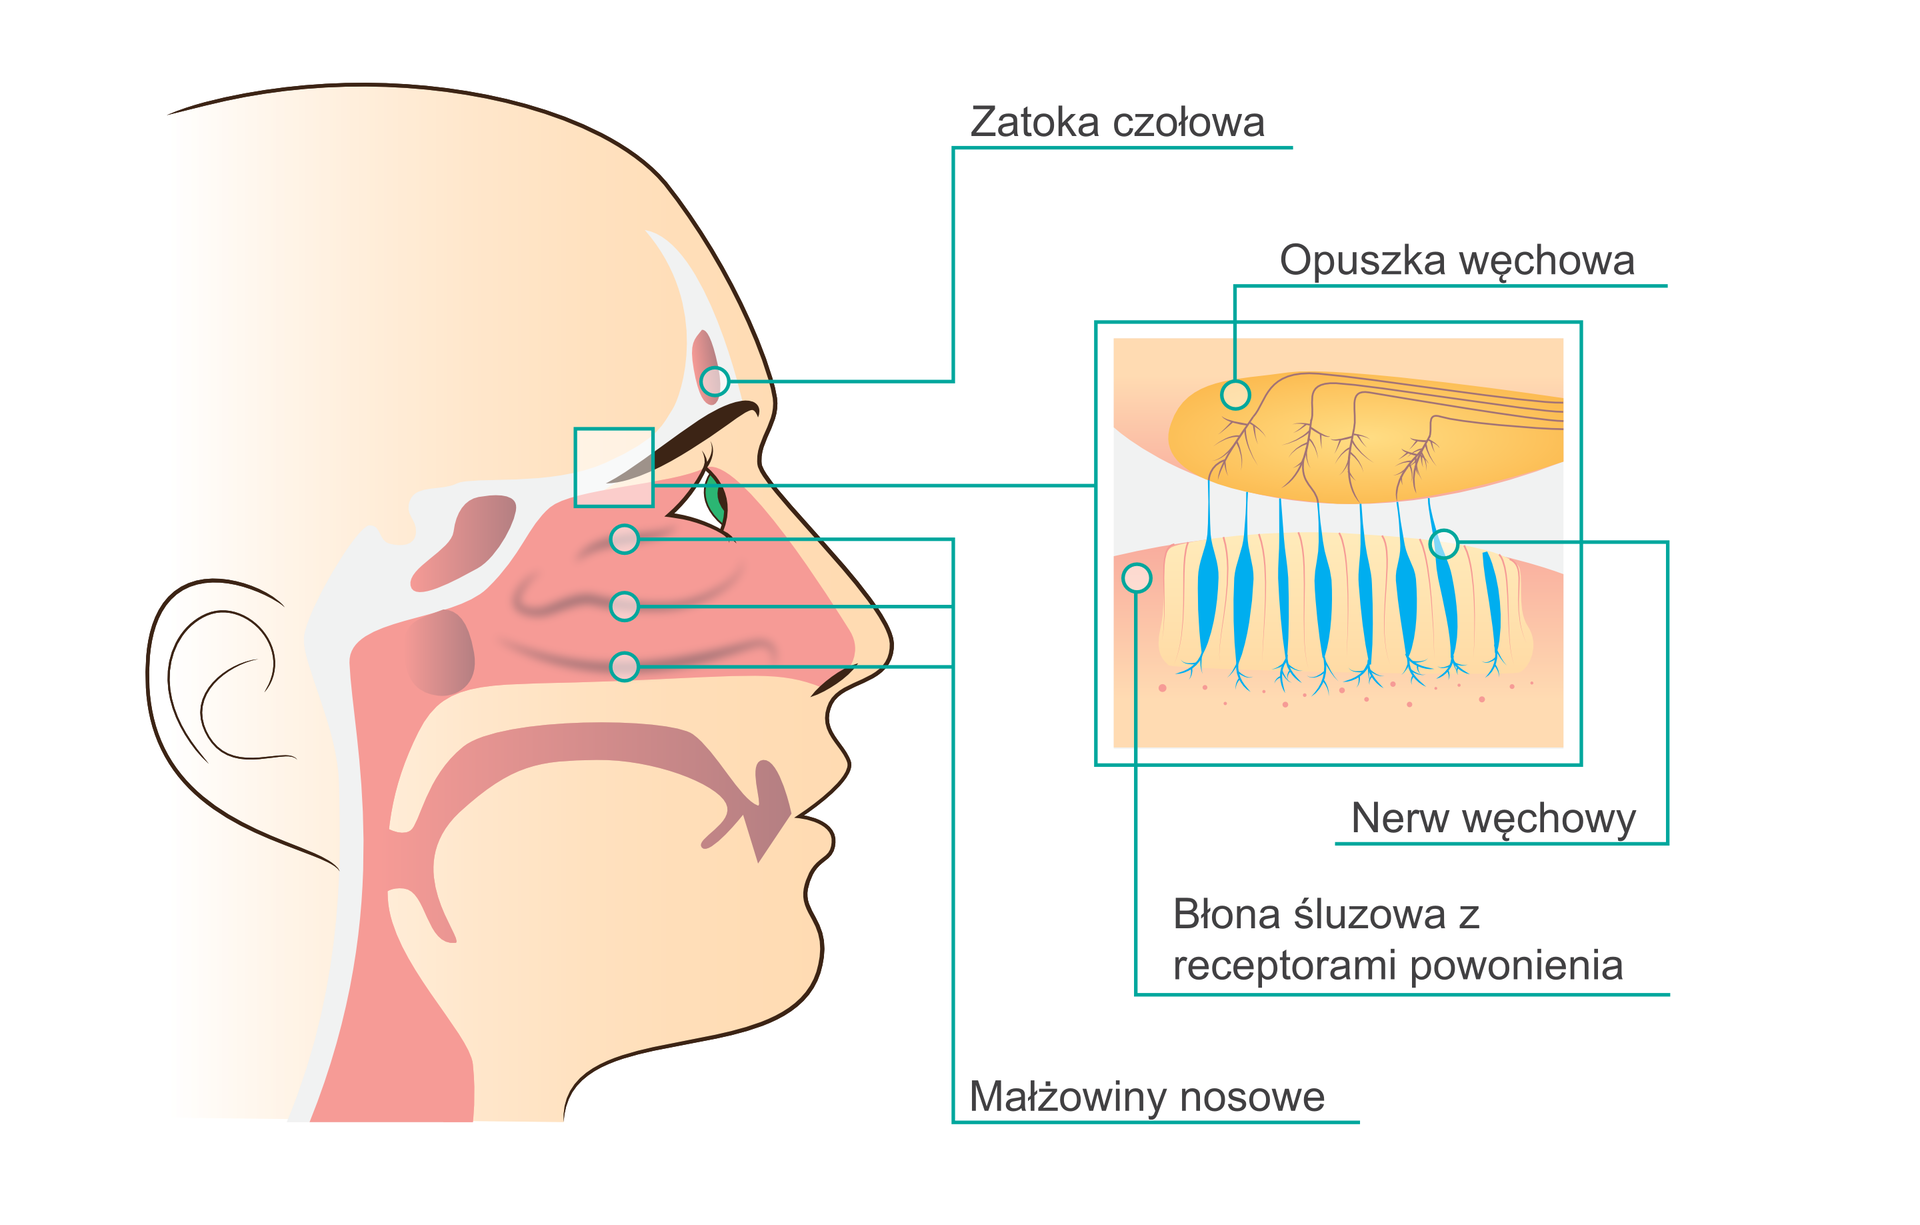 Ilustracja przedstawia opis ludzkiego narządu węchu. Po lewej stronie obrazka znajduje się twarz ludzka widoczna w profilu z zaznaczonymi drogami oddechowymi oraz zatokami. Wyróżnionymi elementami jest zatoka czołowa, znajdująca się nad brwiami, trzy małżowiny nosowe w jamie nosowej oraz nabłonek węchowy w górnej części tej samej jamy. Po prawej stronie ilustracji znajduje się zbliżenie i dokładny opis budowy nabłonka nosowego z uwzględnieniem trzech elementów: opuszki węchowej u góry oraz błony śluzowej z receptorami powonienia i nerwu węchowego u dołu.